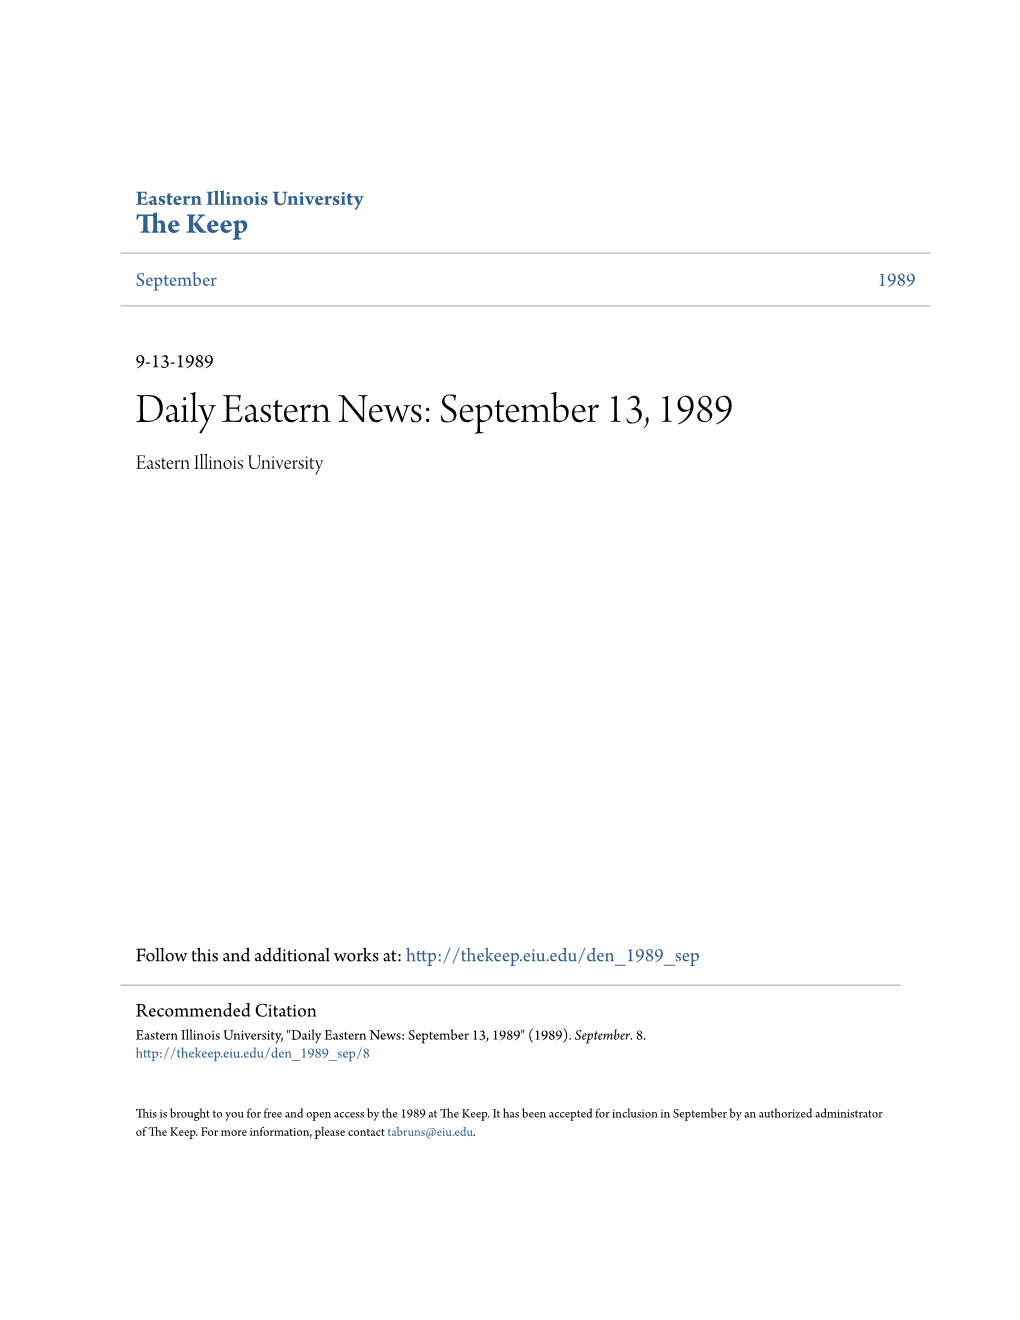 Daily Eastern News: September 13, 1989 Eastern Illinois University